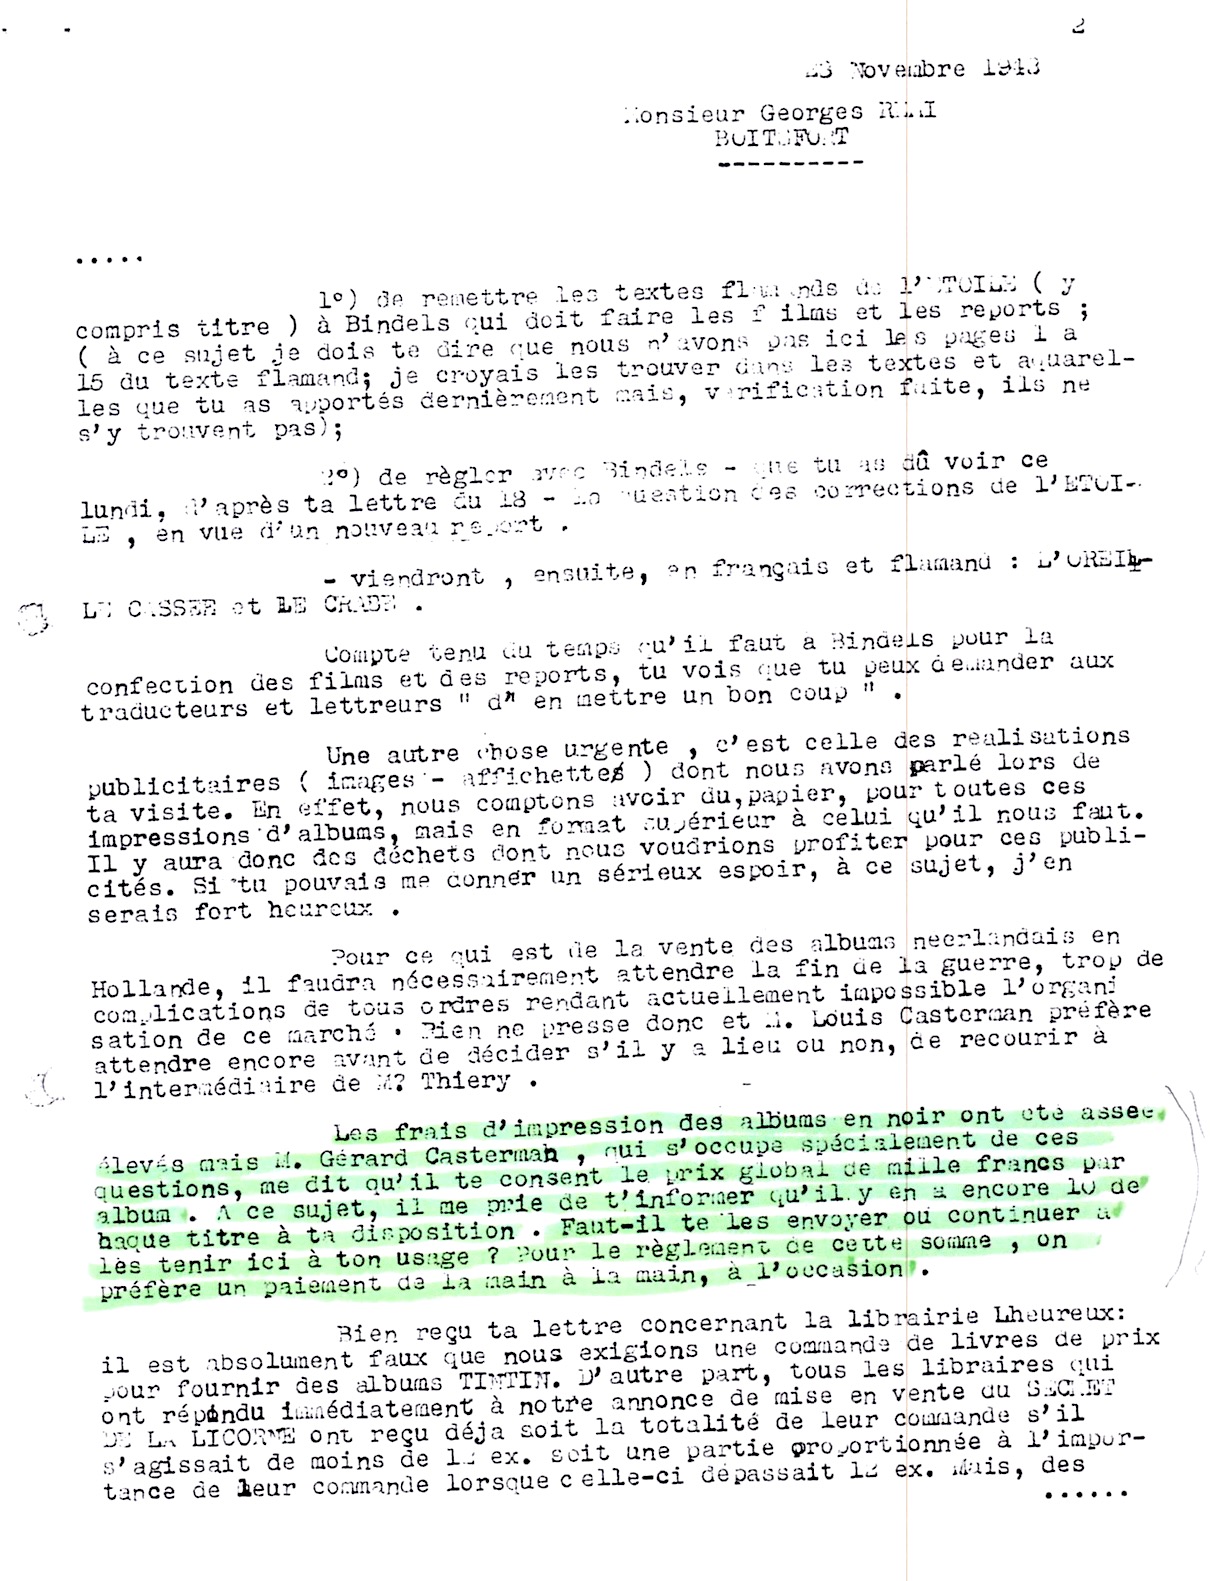 Réponse de Lesne du 30 novembre 1943 : le reste sera tenu à disposition à Tournai…